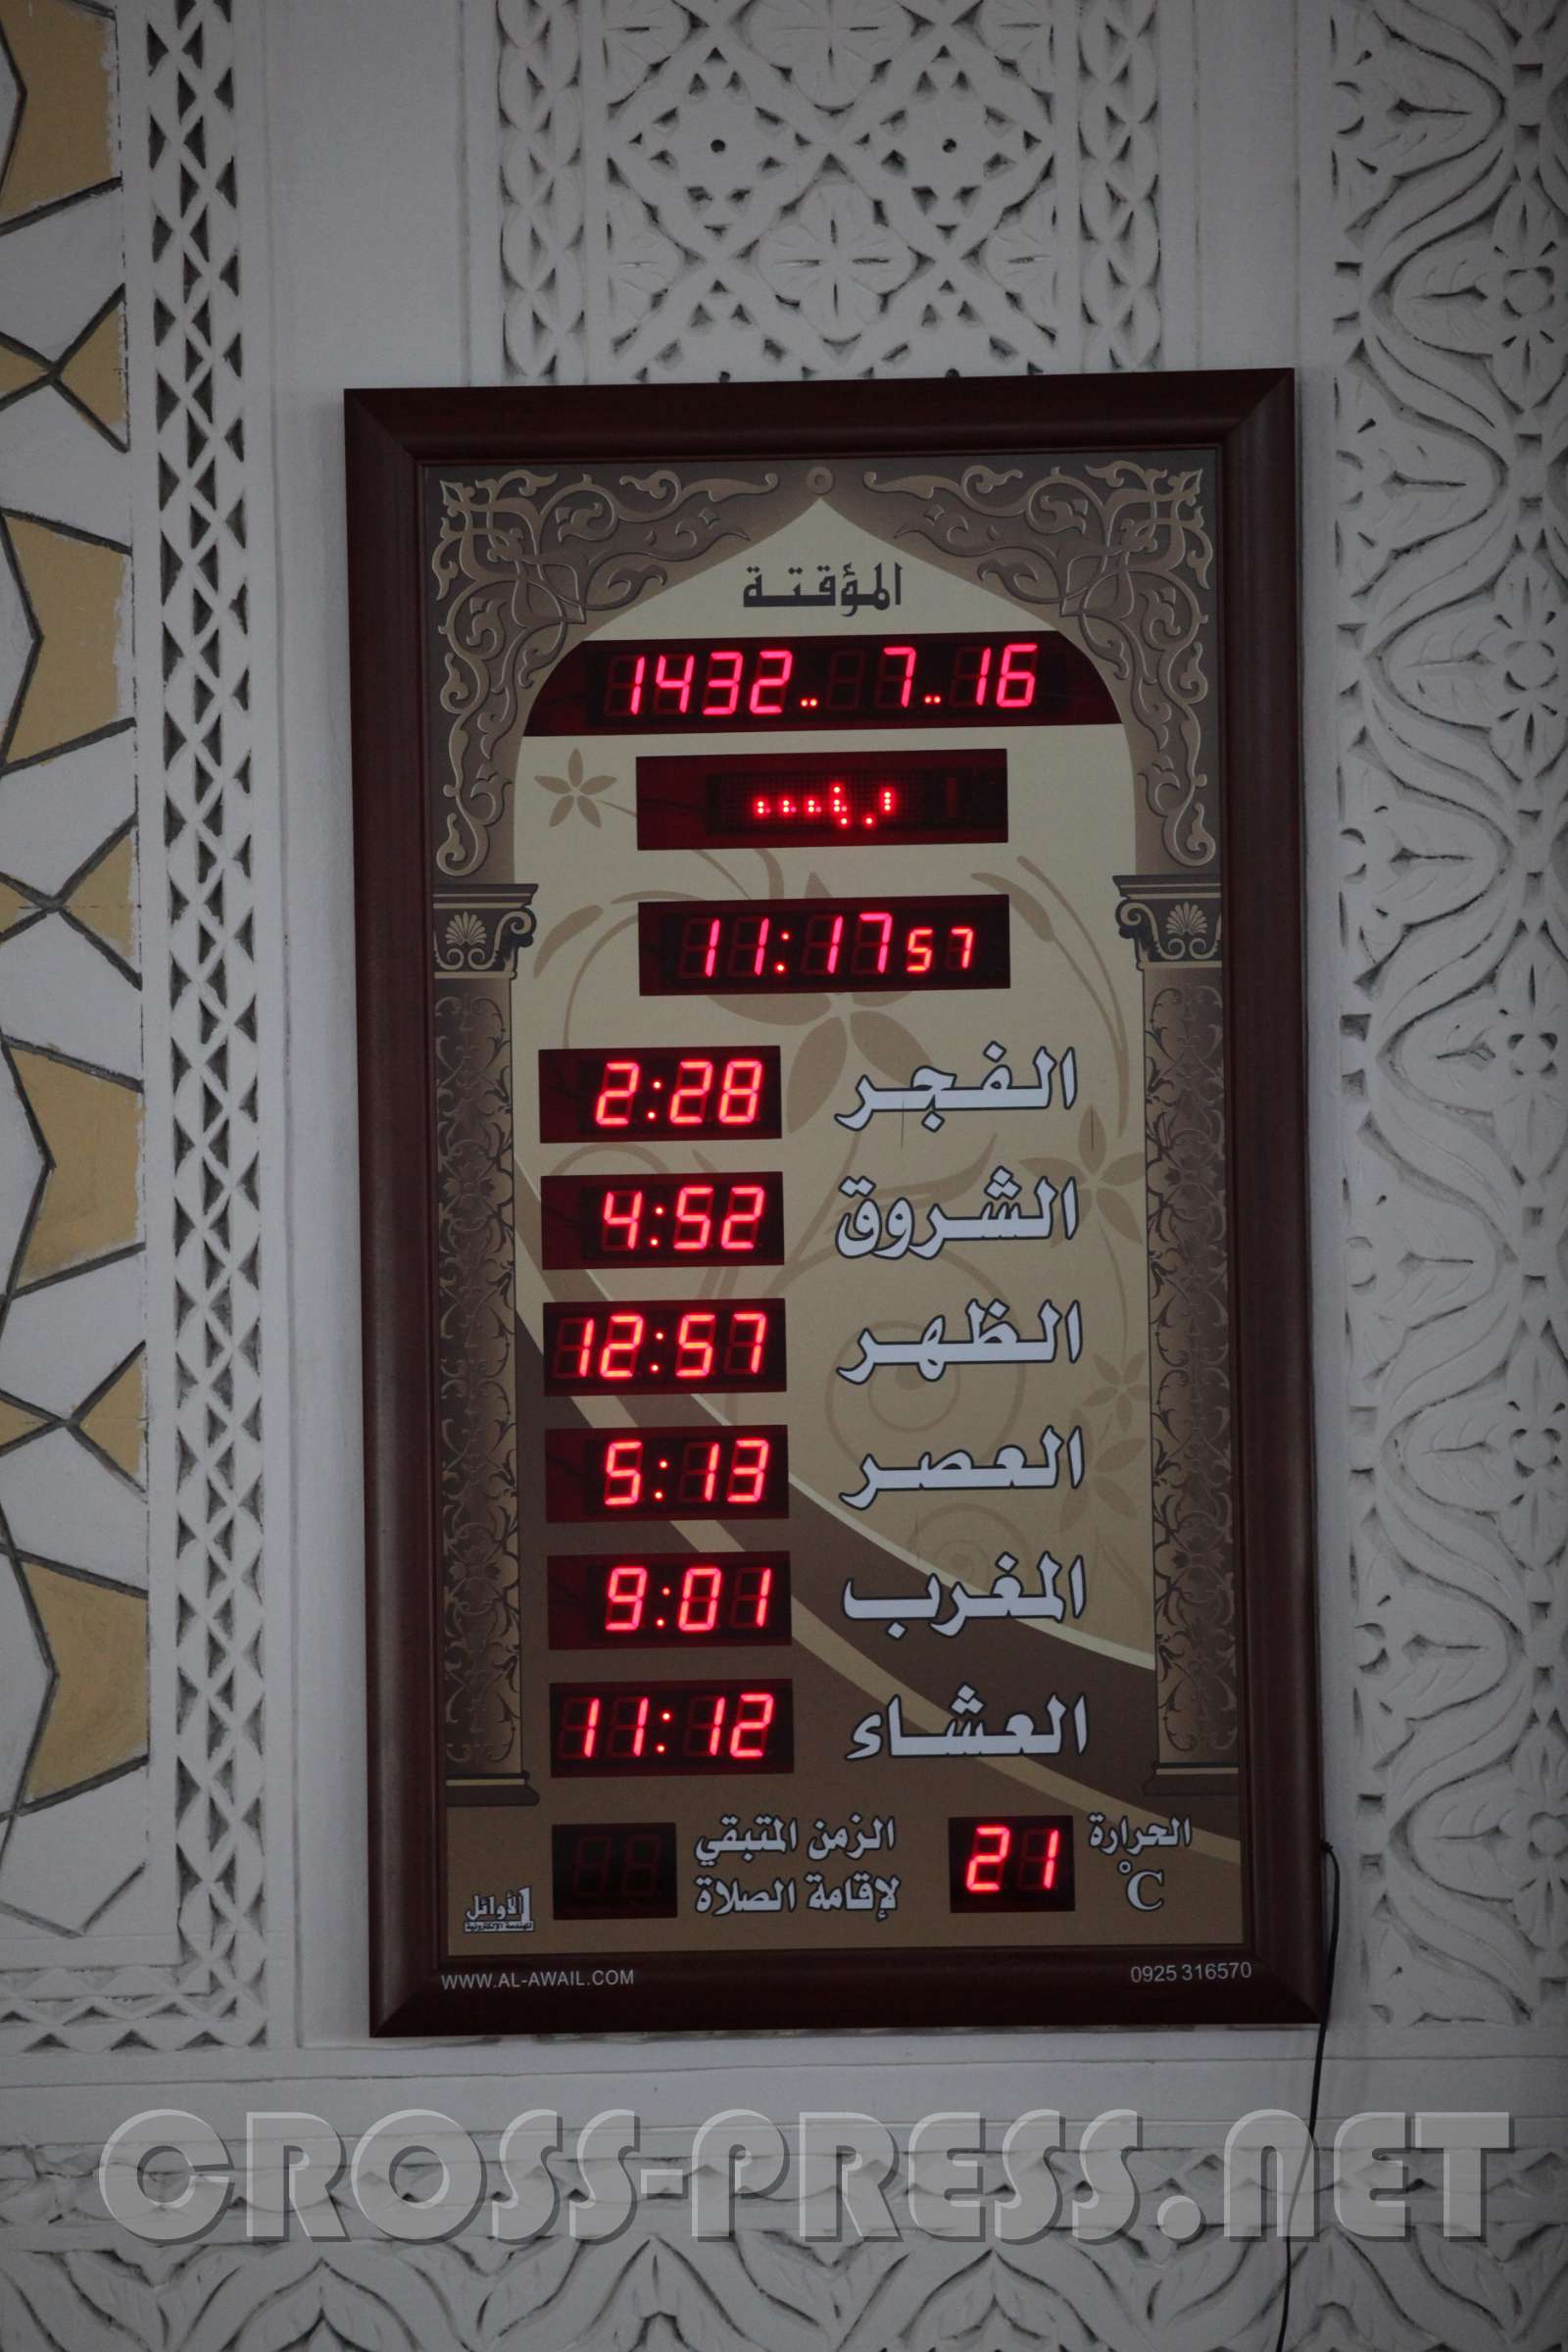 2011.06.18_11.19.58.jpg - Automatischer Gebetskalender mit Tagesgebetszeiten und Thermometer.